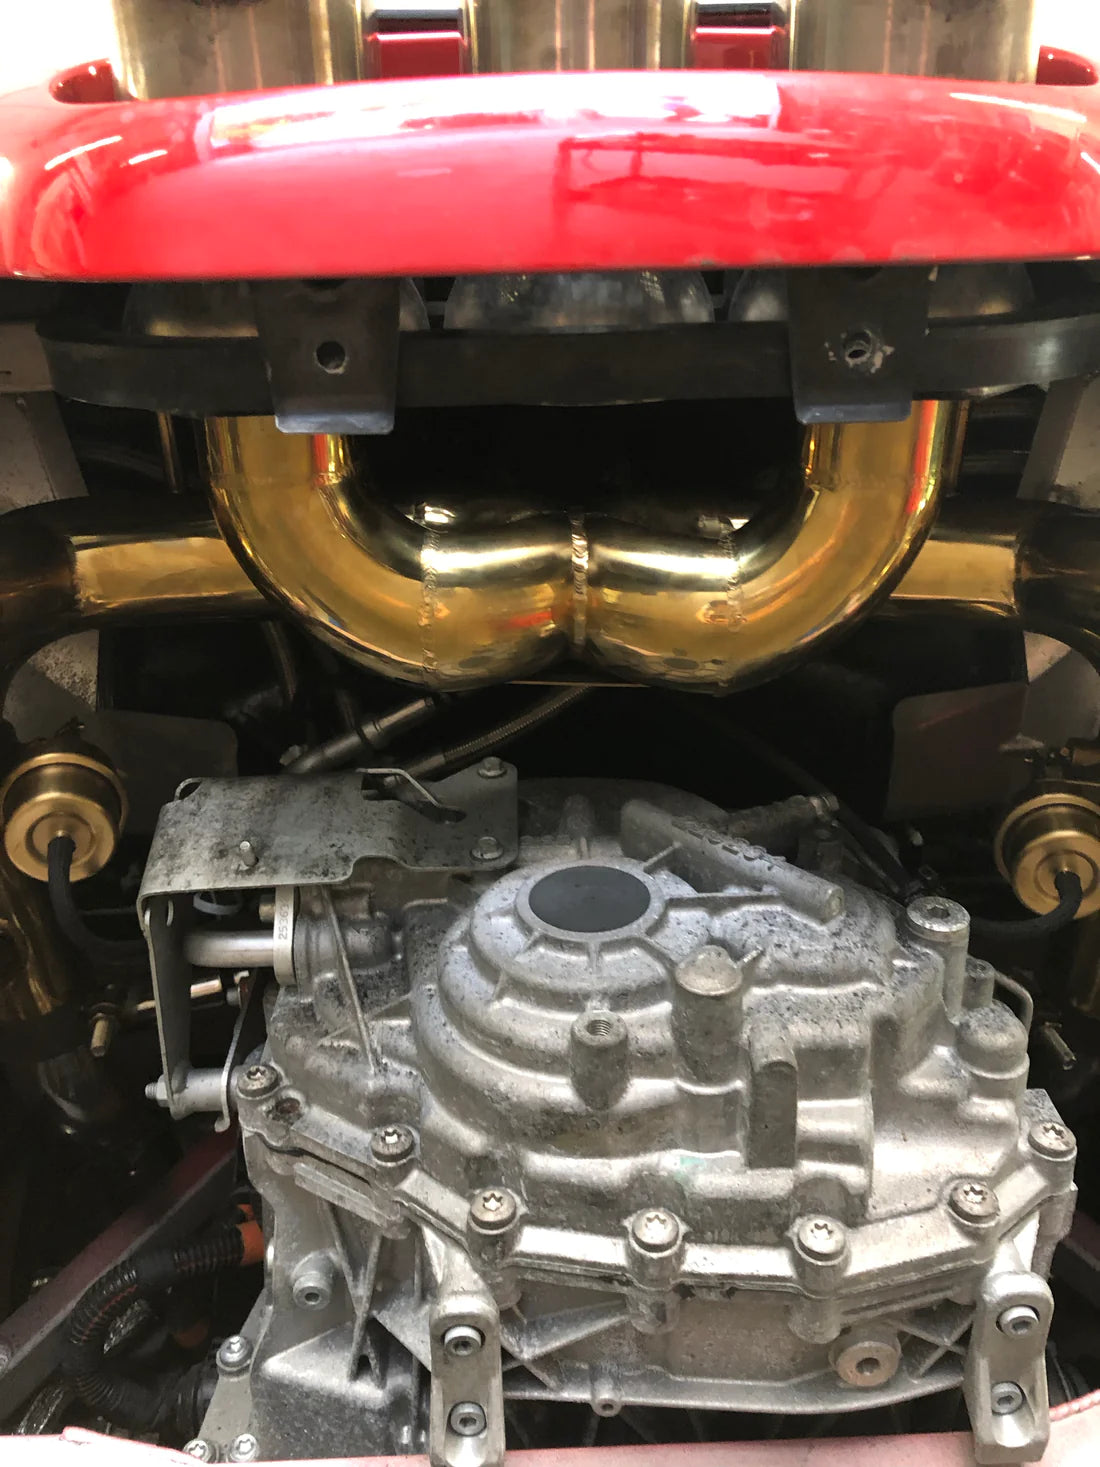 Valvetronic - Valved Sport Exhaust System || Ferrari 458